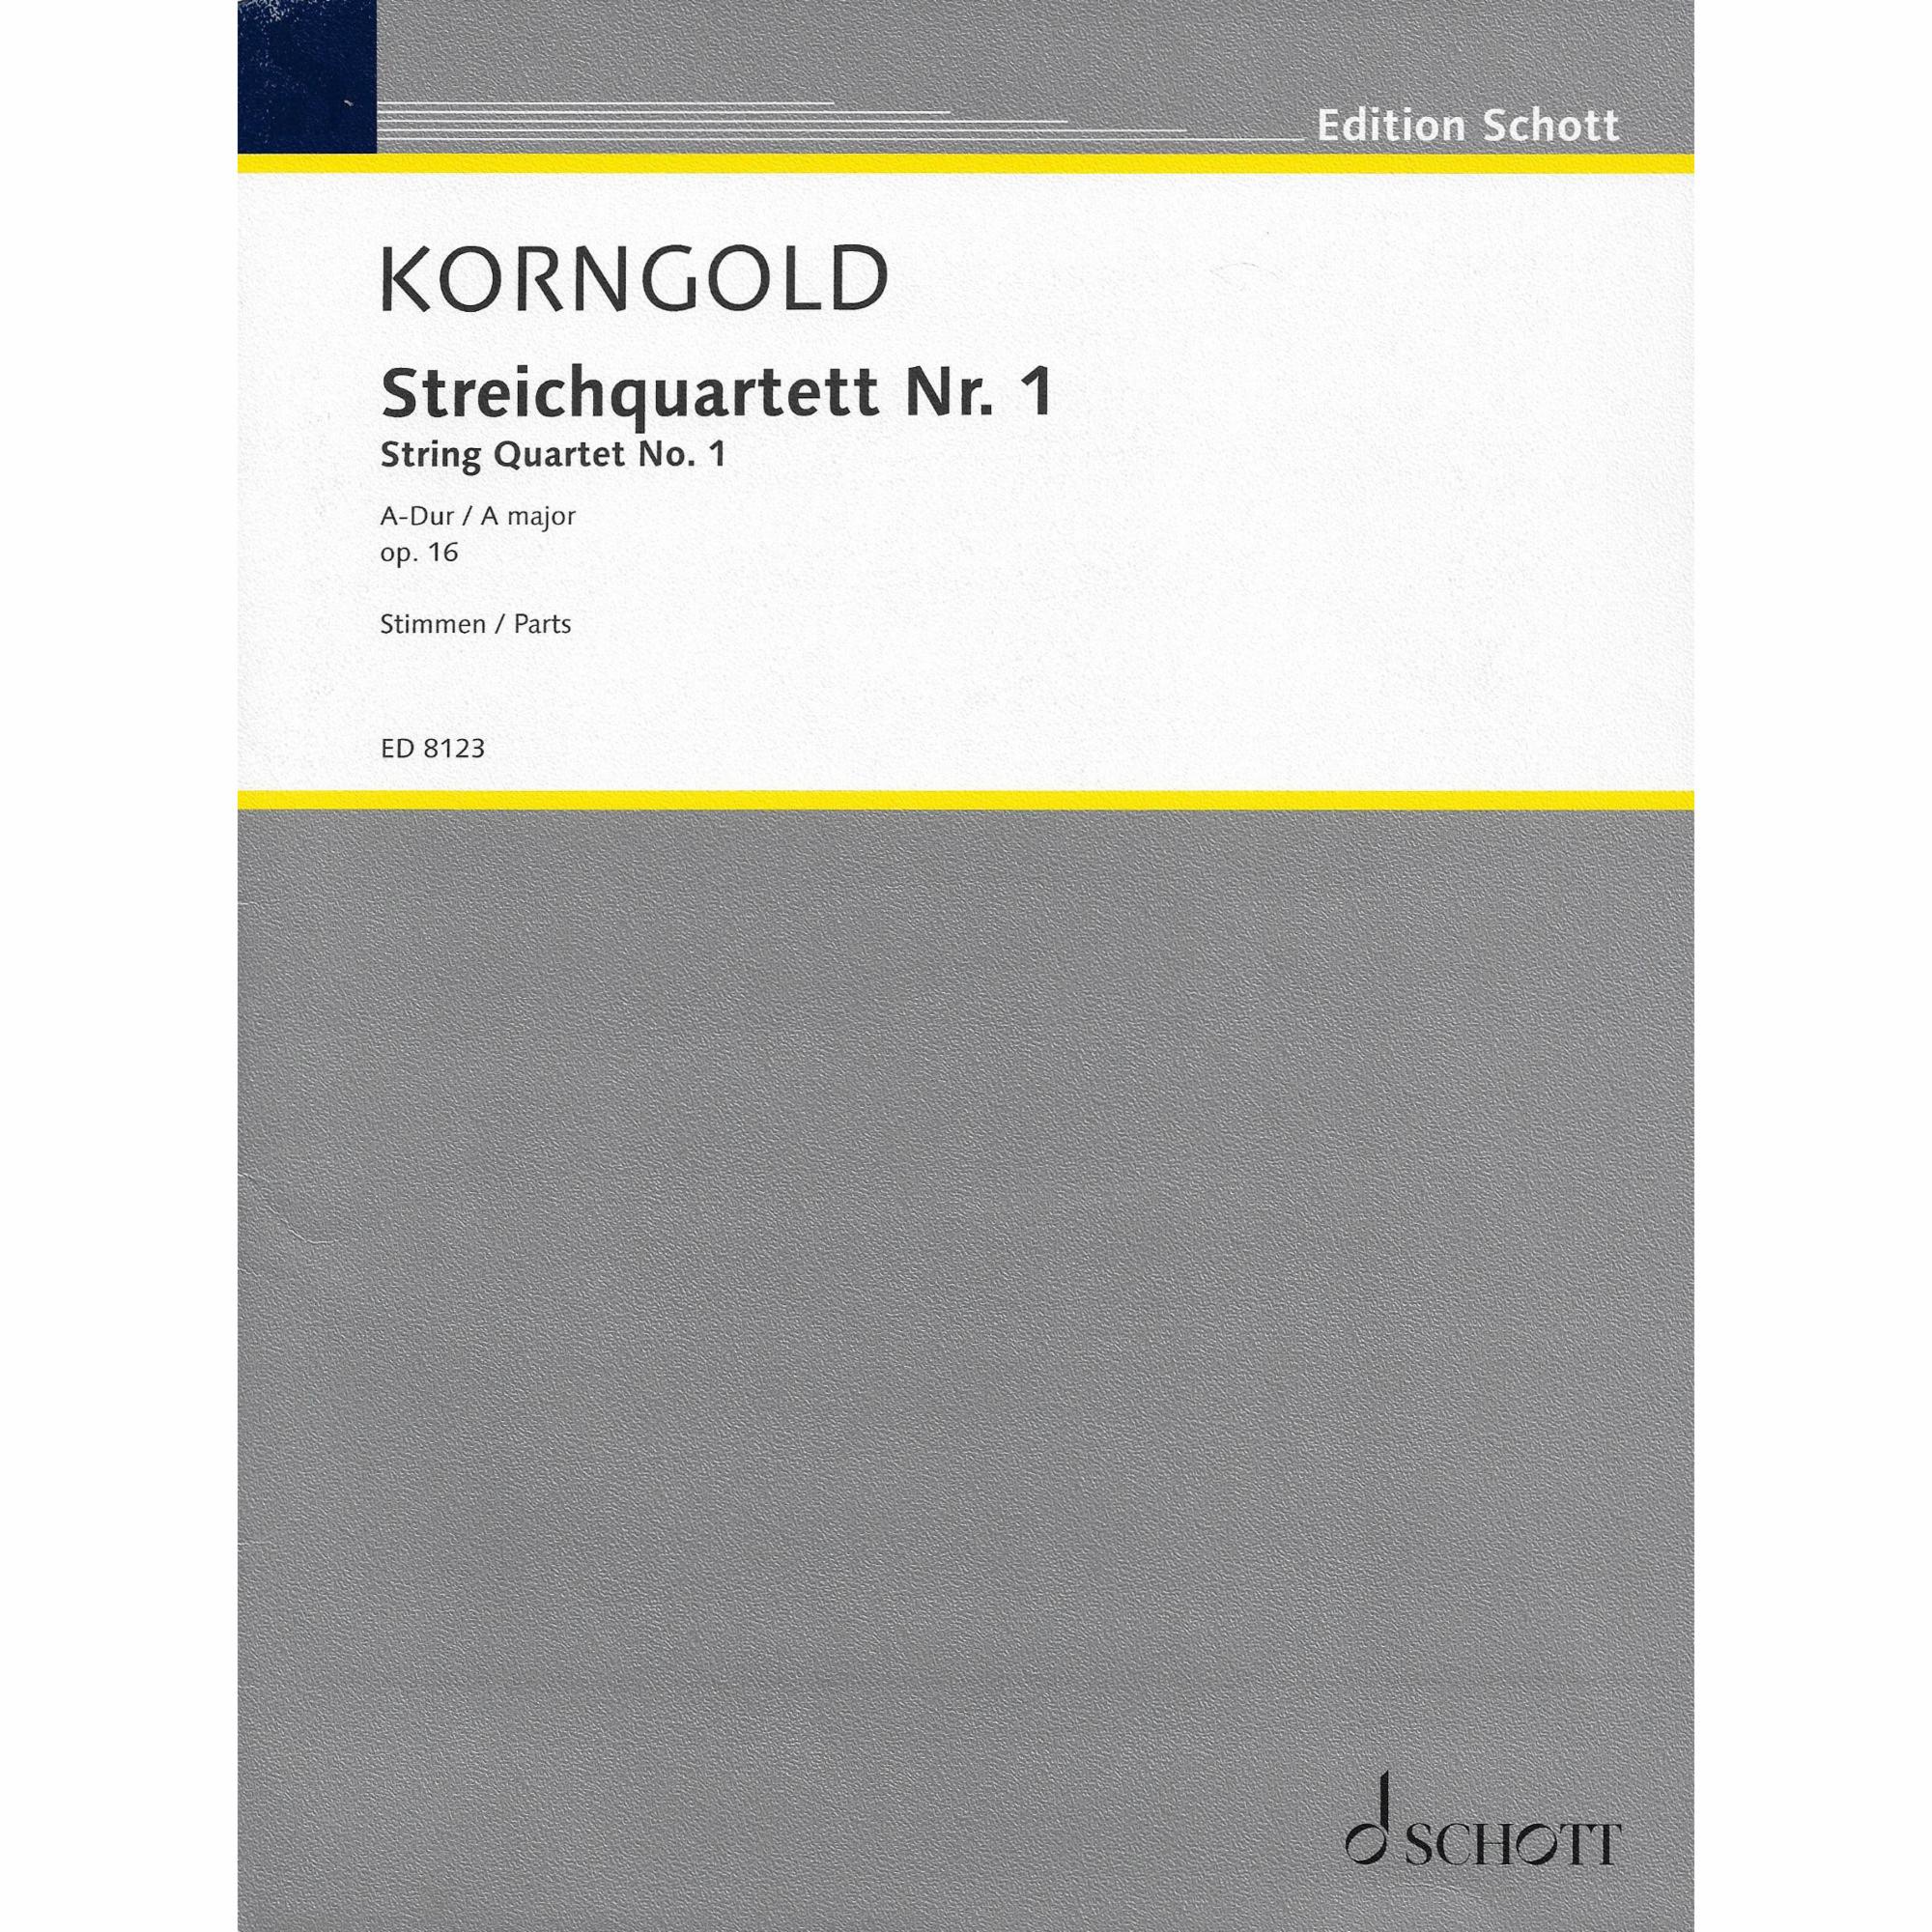 Korngold -- String Quartet No. 1 in A Major, Op. 16